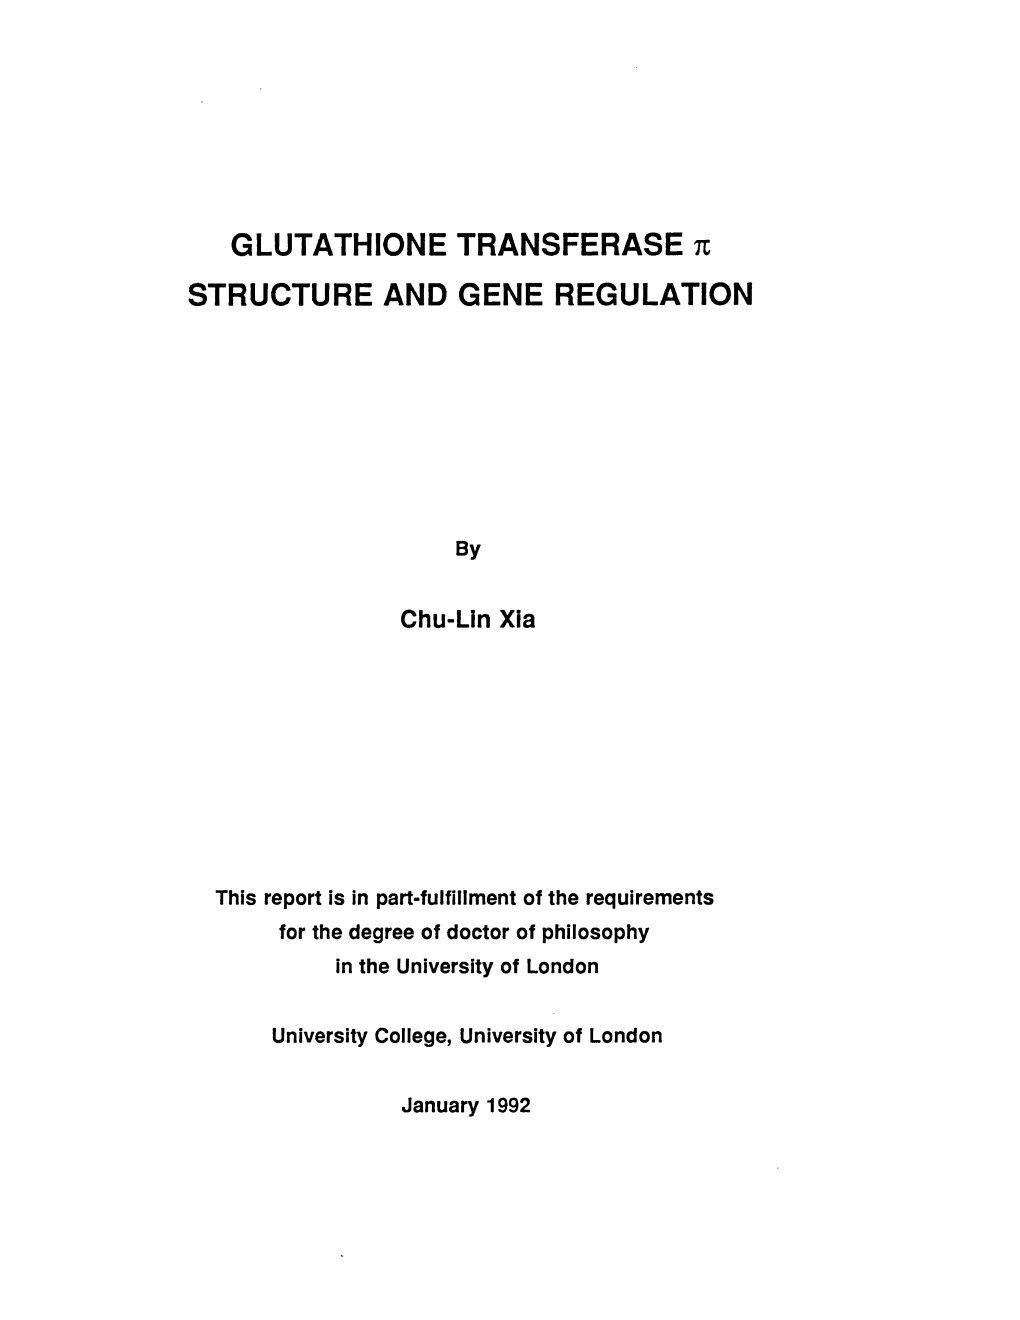 GLUTATHIONE TRANSFERASE N STRUCTURE and GENE REGULATION